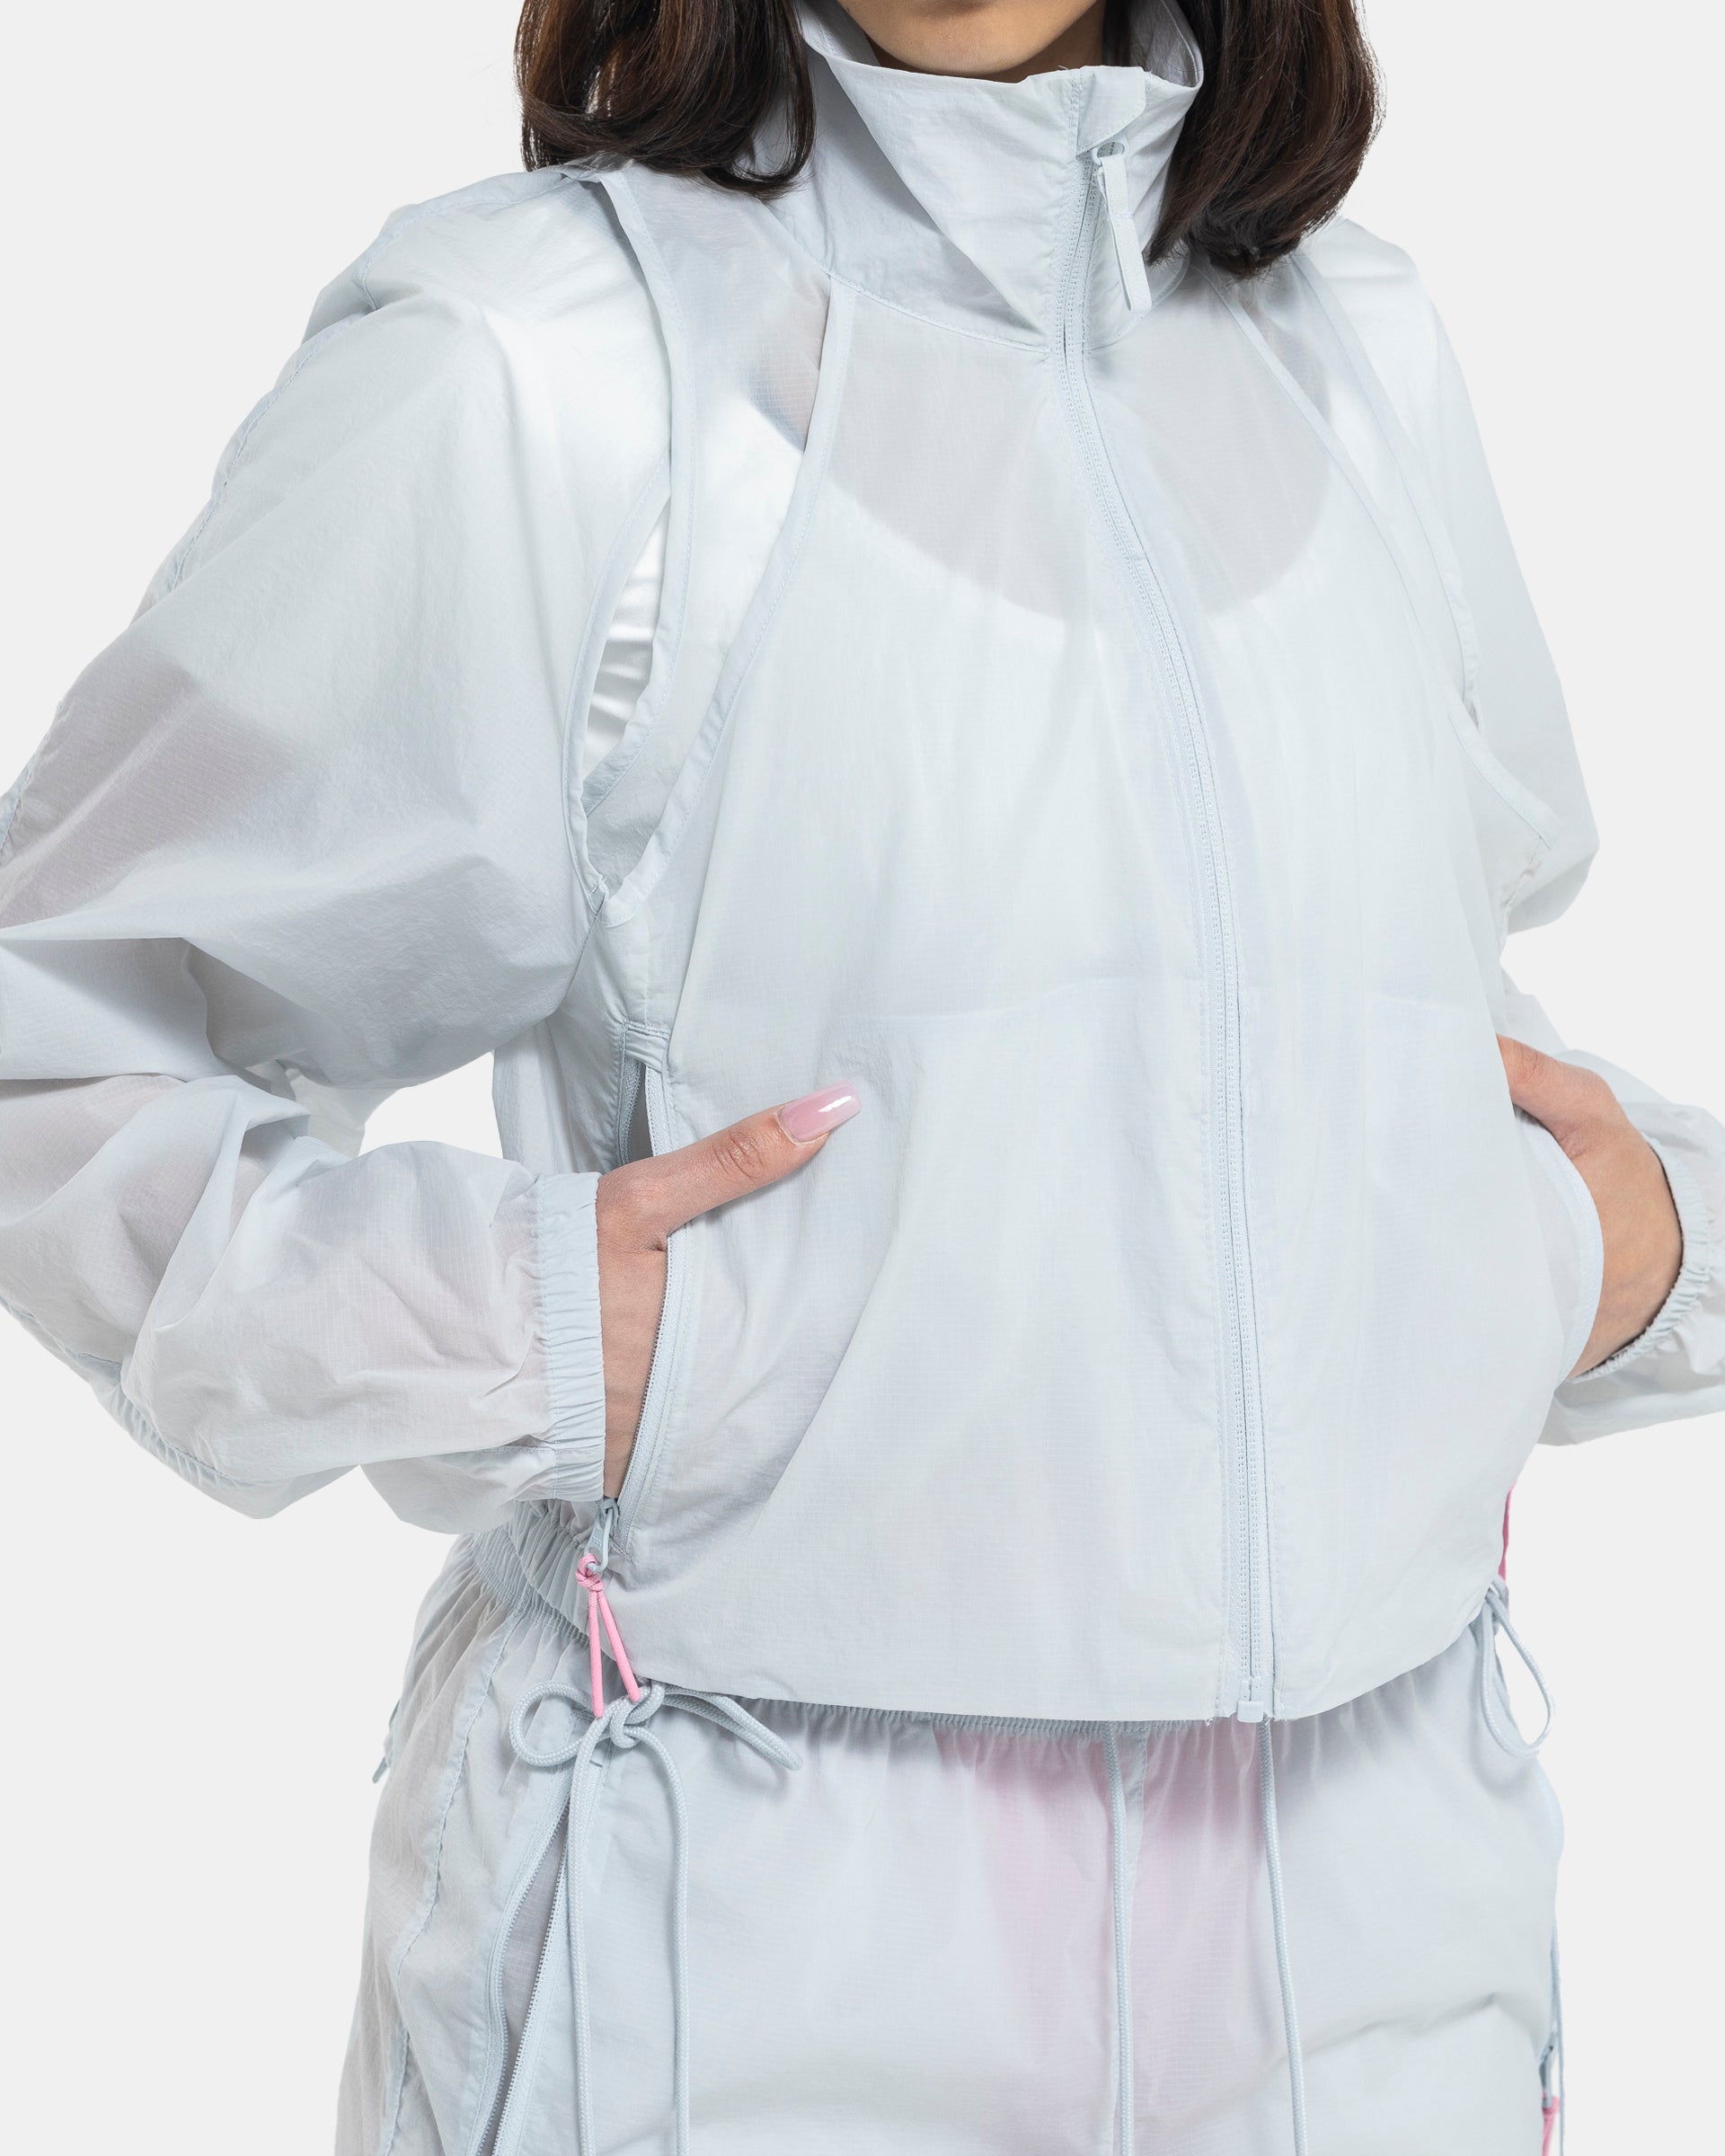 Female model wearing RUI x Adidas Pink Jacket on white background